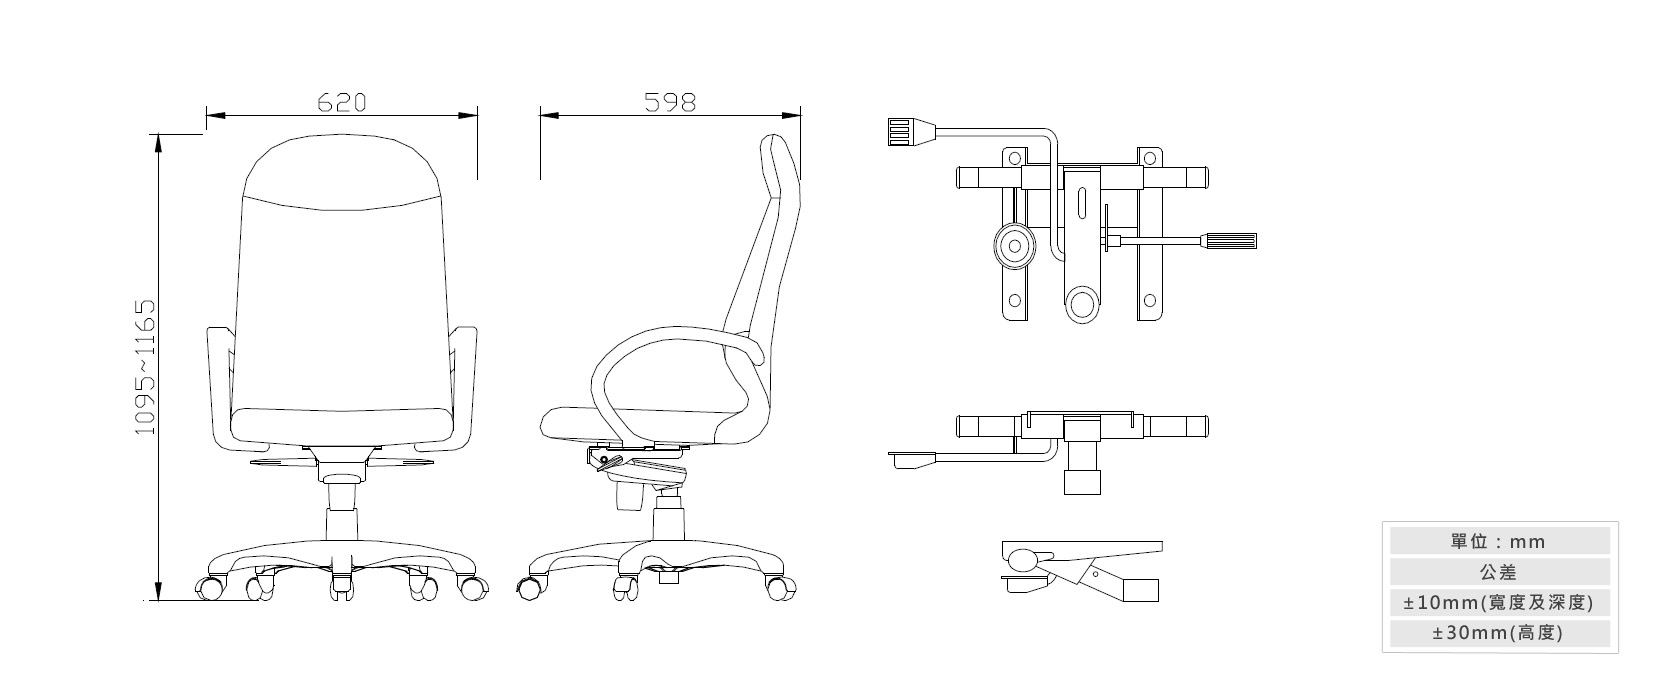 2-17新人體工學辦公椅(附調整腰靠)材質說明